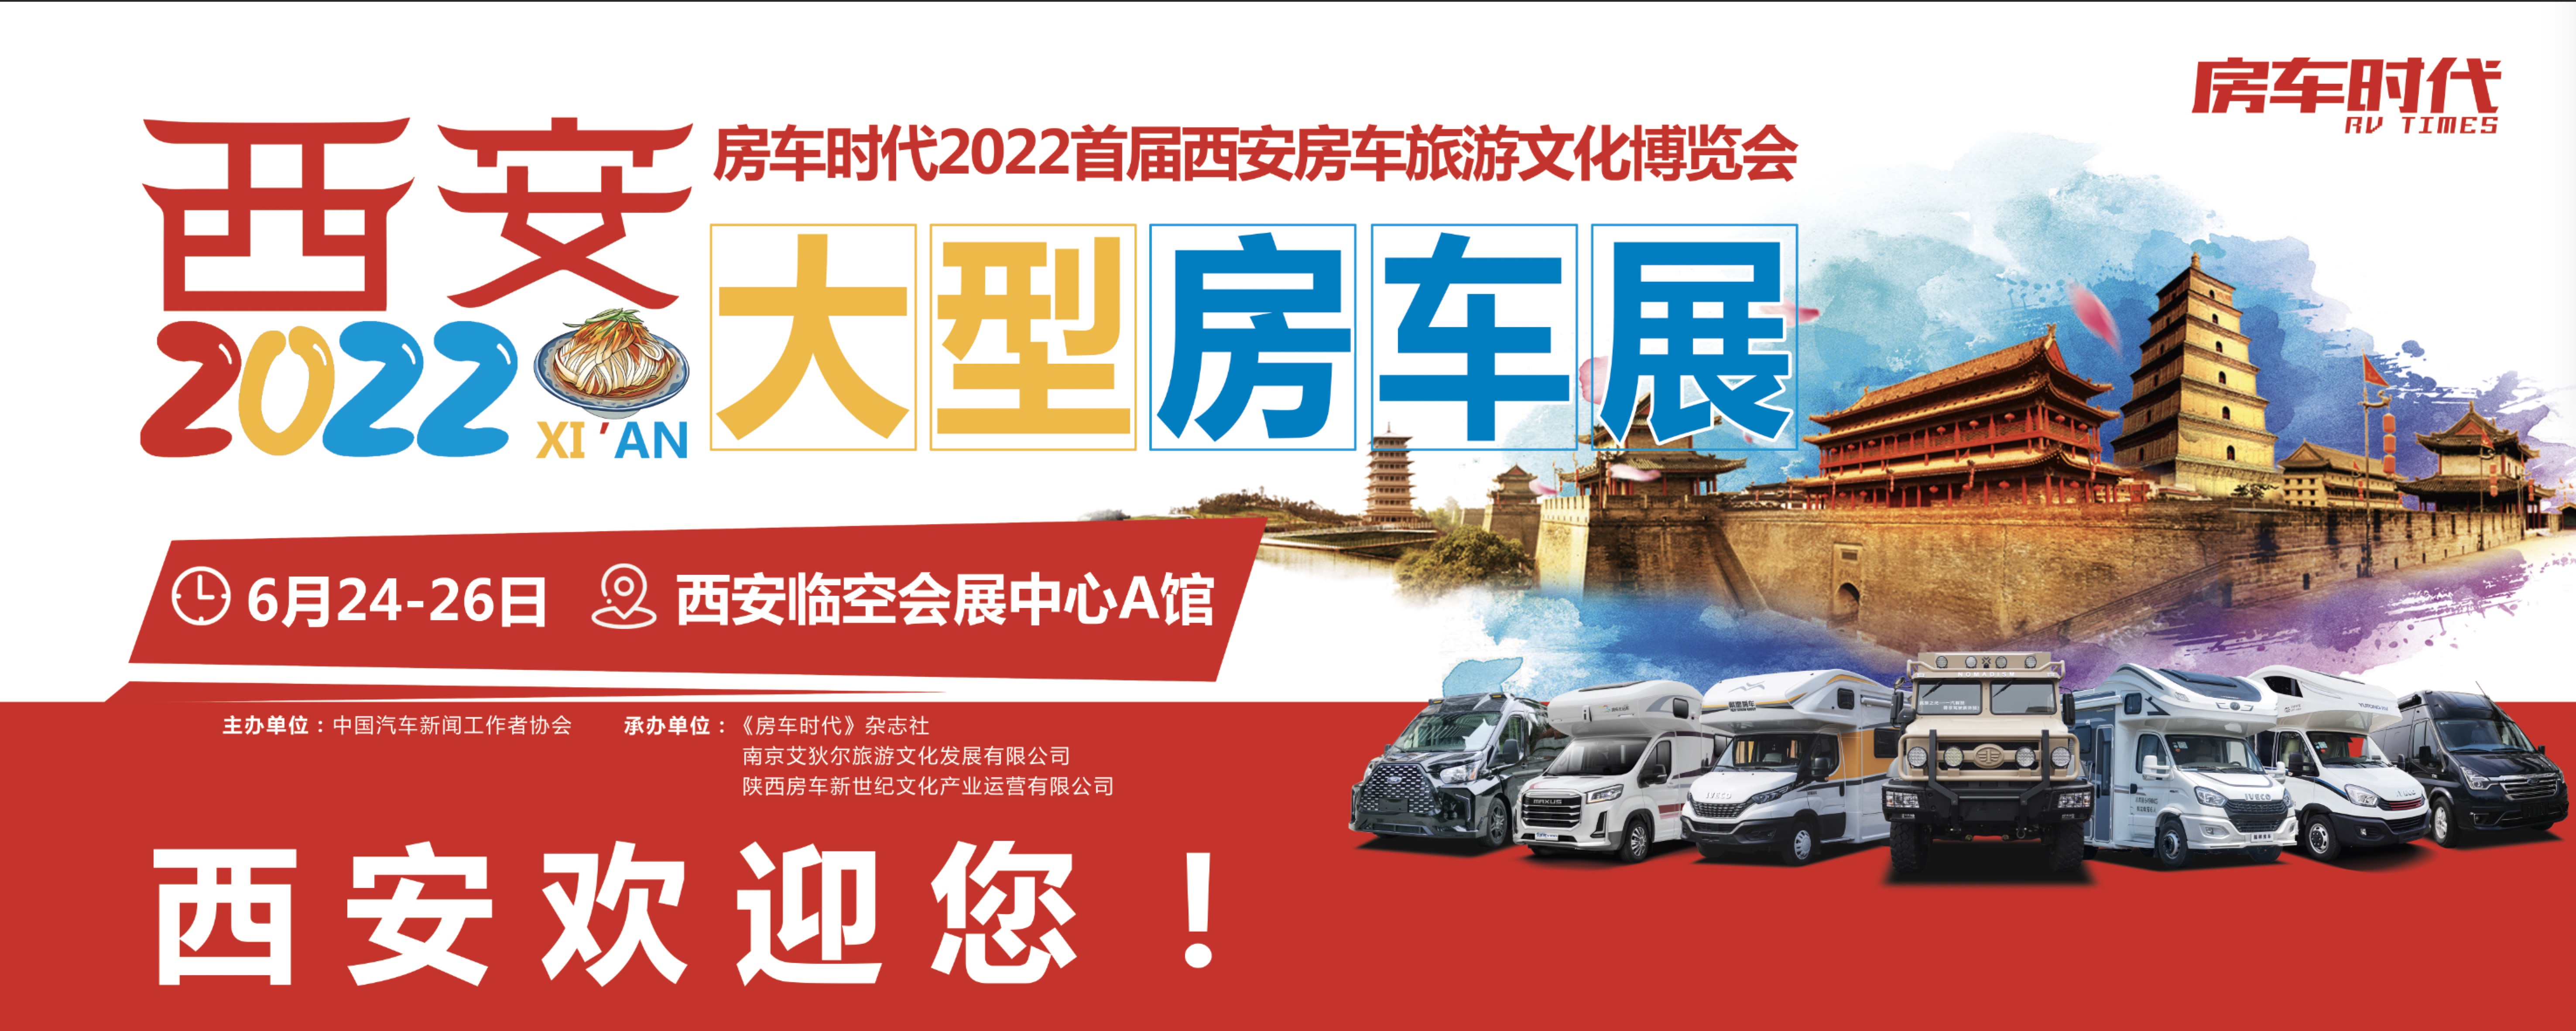 观展指南 | 房车时代2022首届西安房车旅游文化博览会